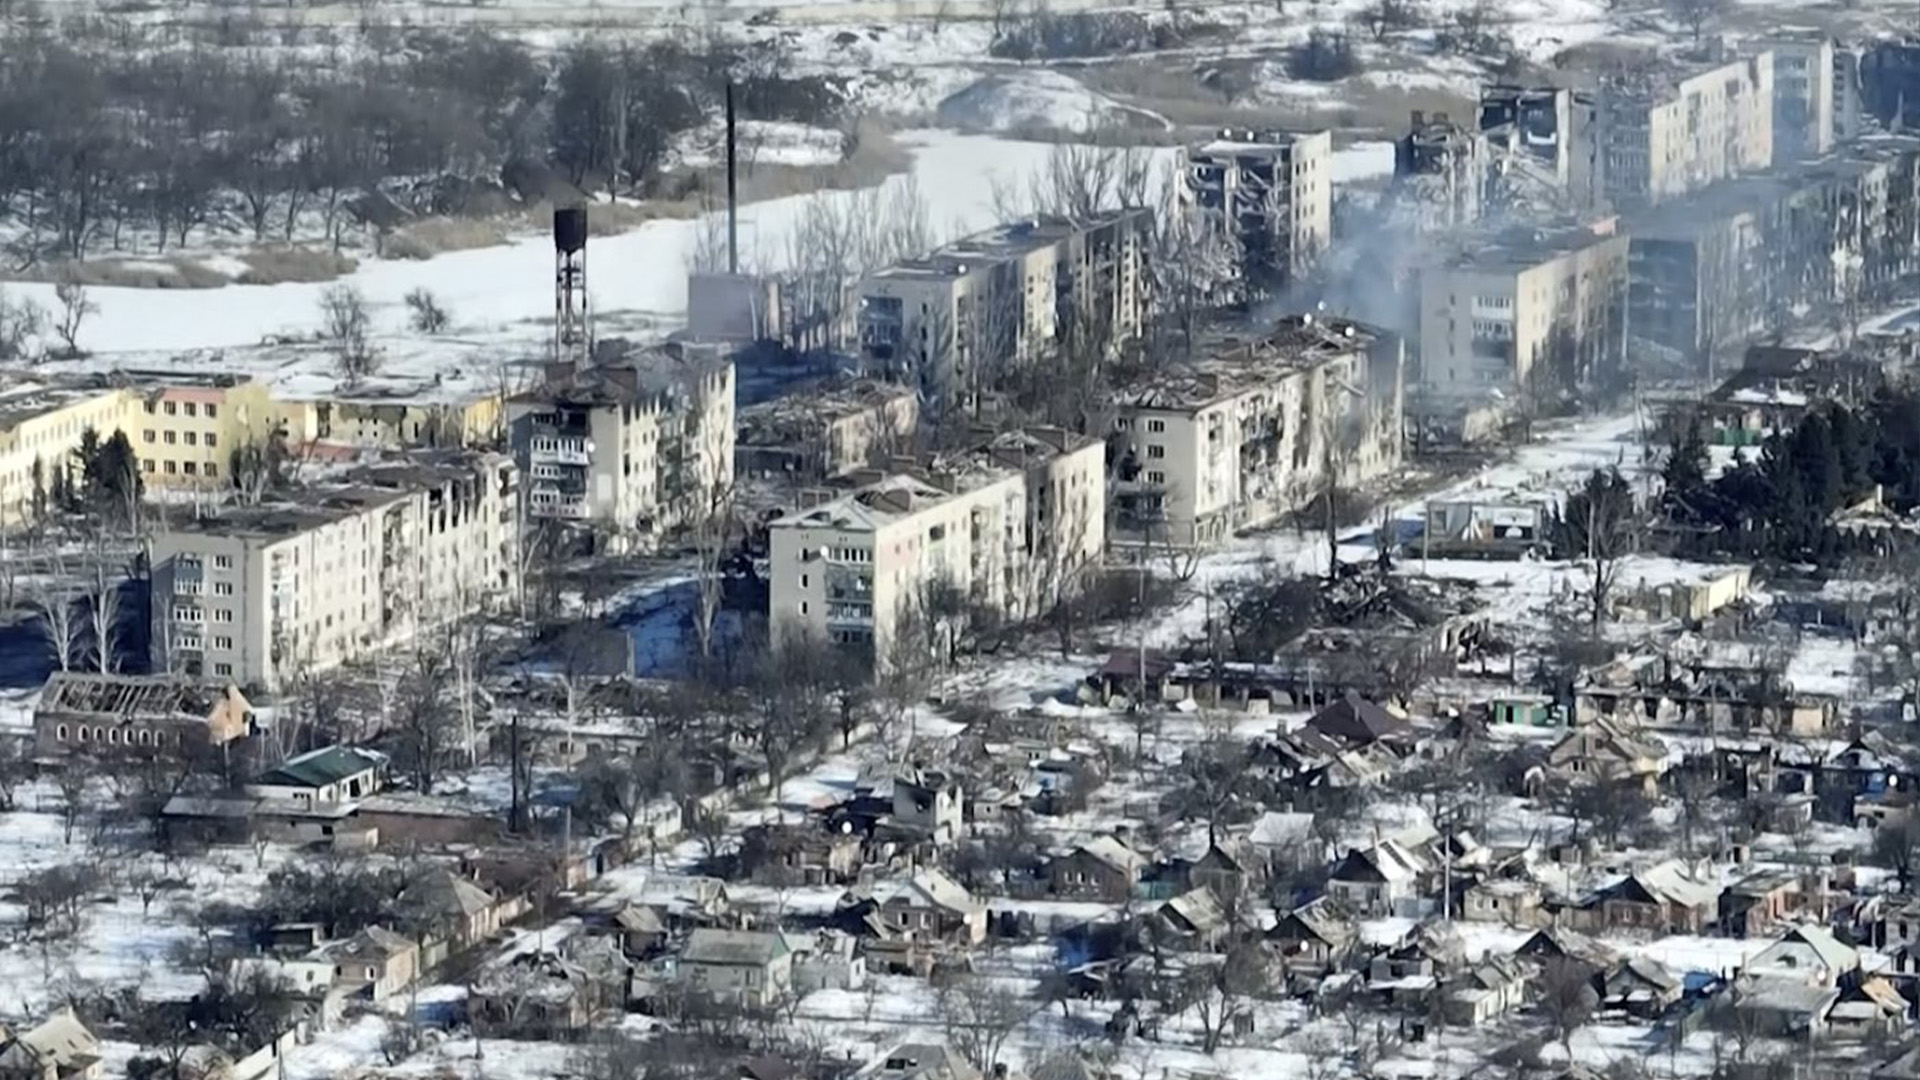 De nouvelles séquences vidéo de Bakhmut tournées depuis les airs avec un drone pour l'Associated Press montrent comment la plus longue bataille de l'invasion russe d'un an a transformé la ville des mines de sel et de gypse dans l'est de l'Ukraine en une ville fantôme. Les images ont été tournées le 13 février 2023.